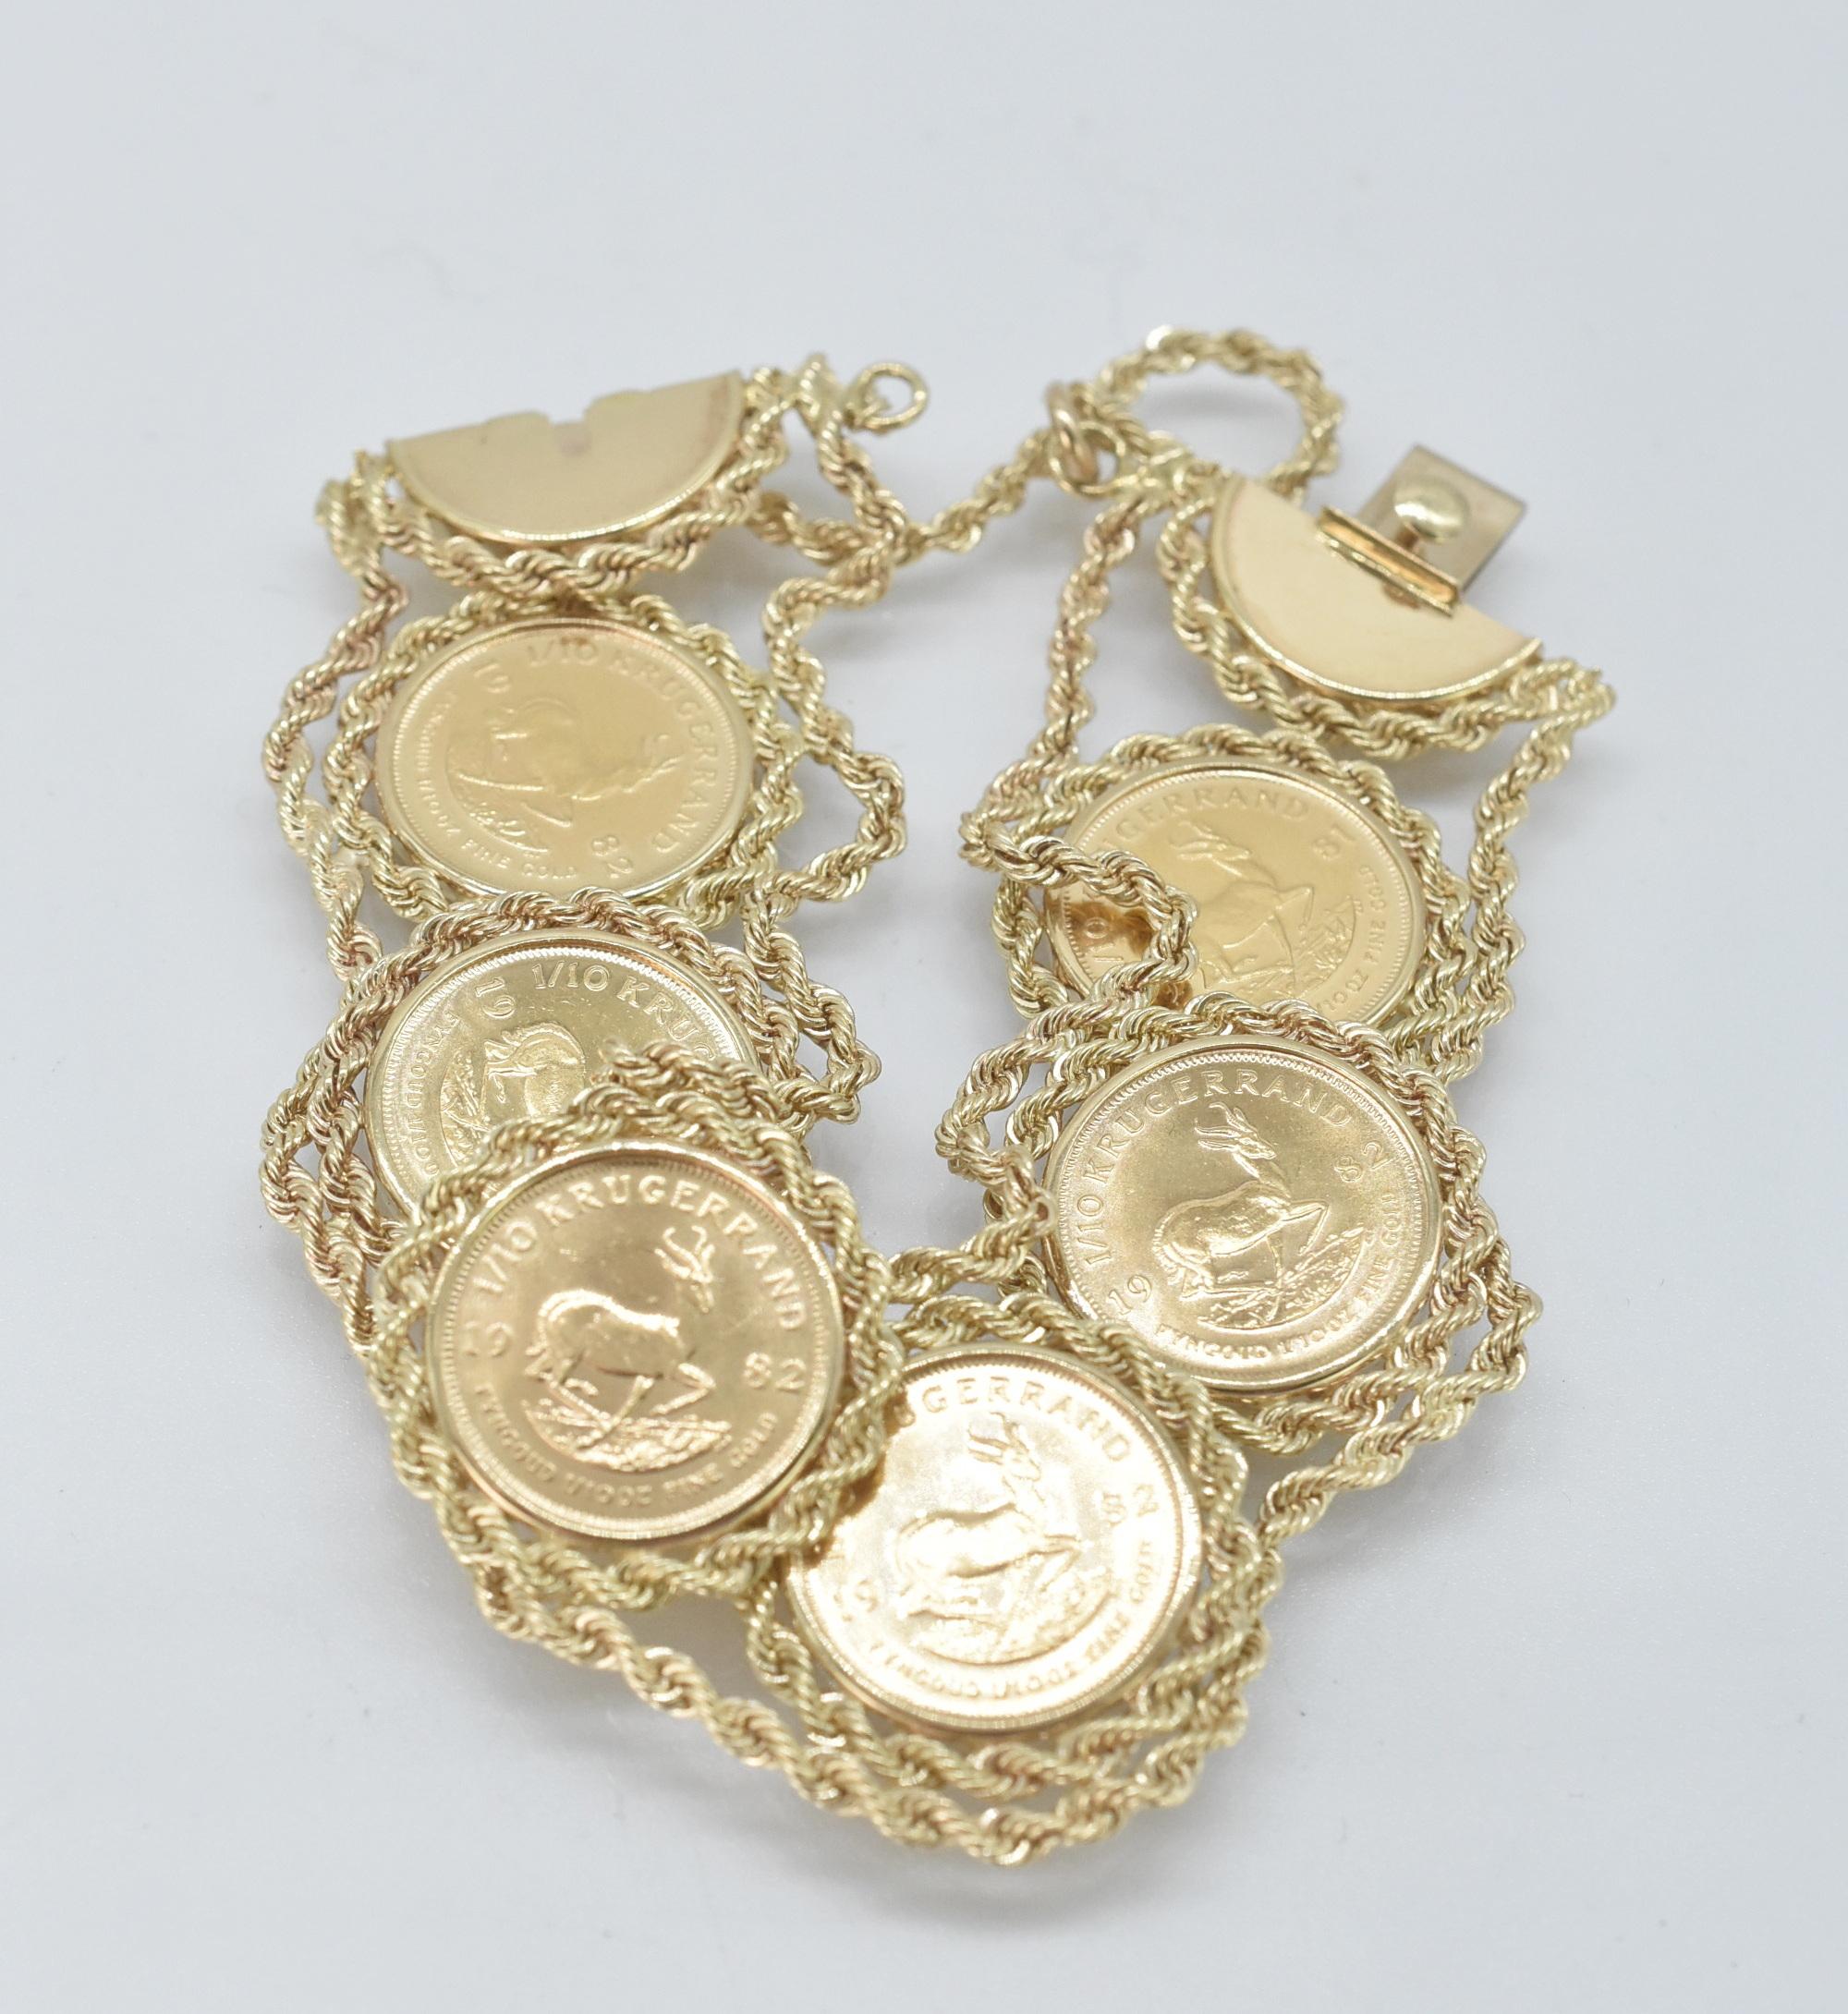 14K, 6 Coins, 1/10 oz Kugerrand Link Bracelet. 1/10 Kugerrand Coin bracelet, 6 coins in a twisted rope design link bracelet. Marked 14K. 6 3/4